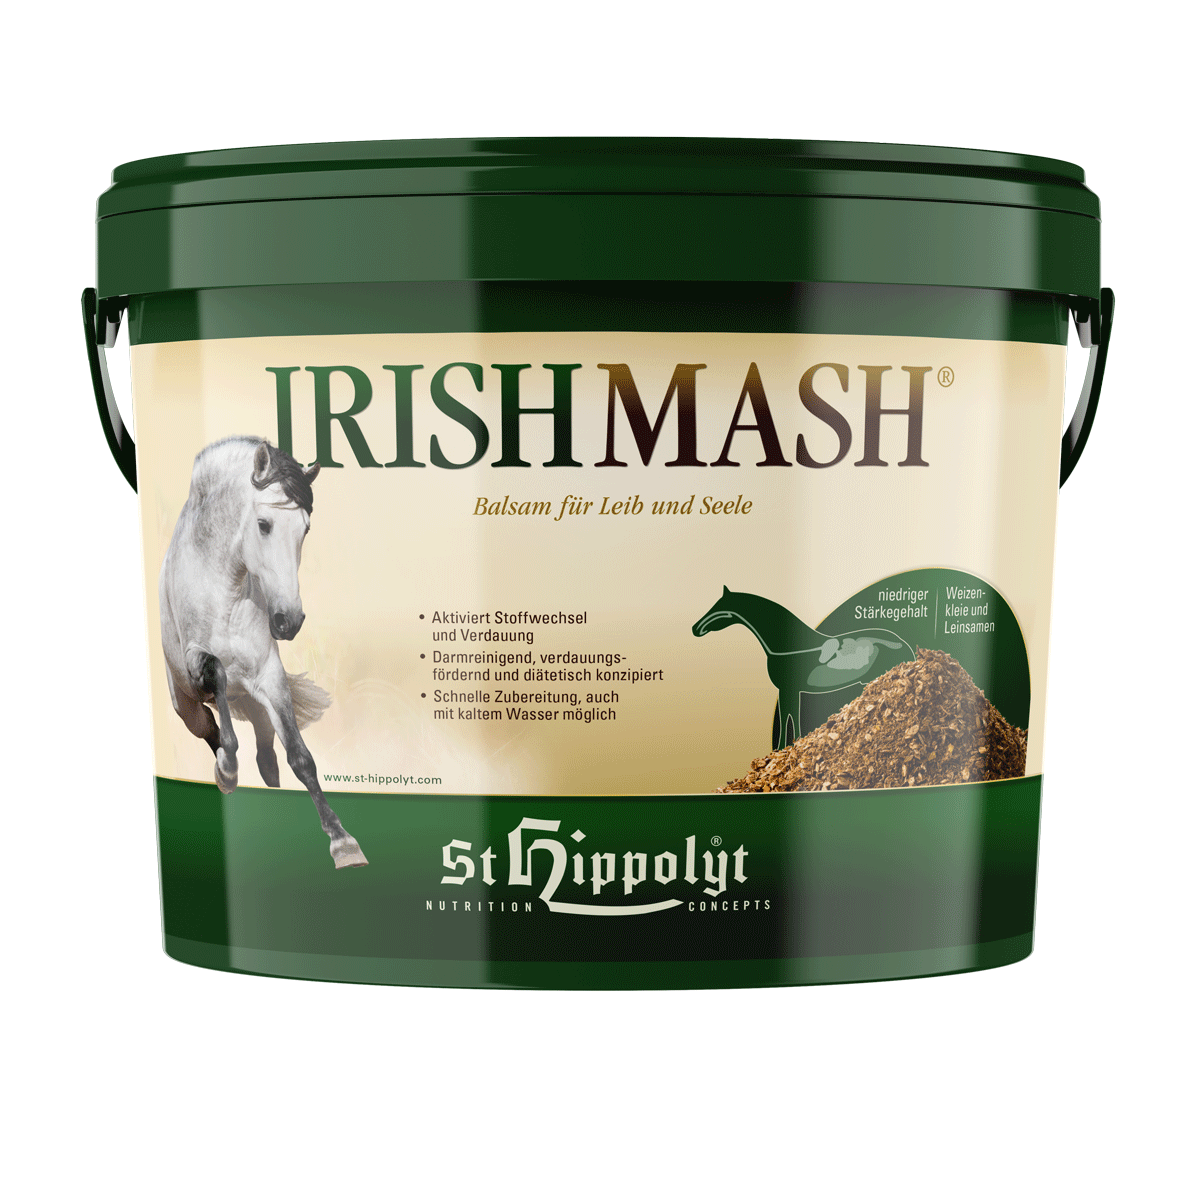 Irish Mash